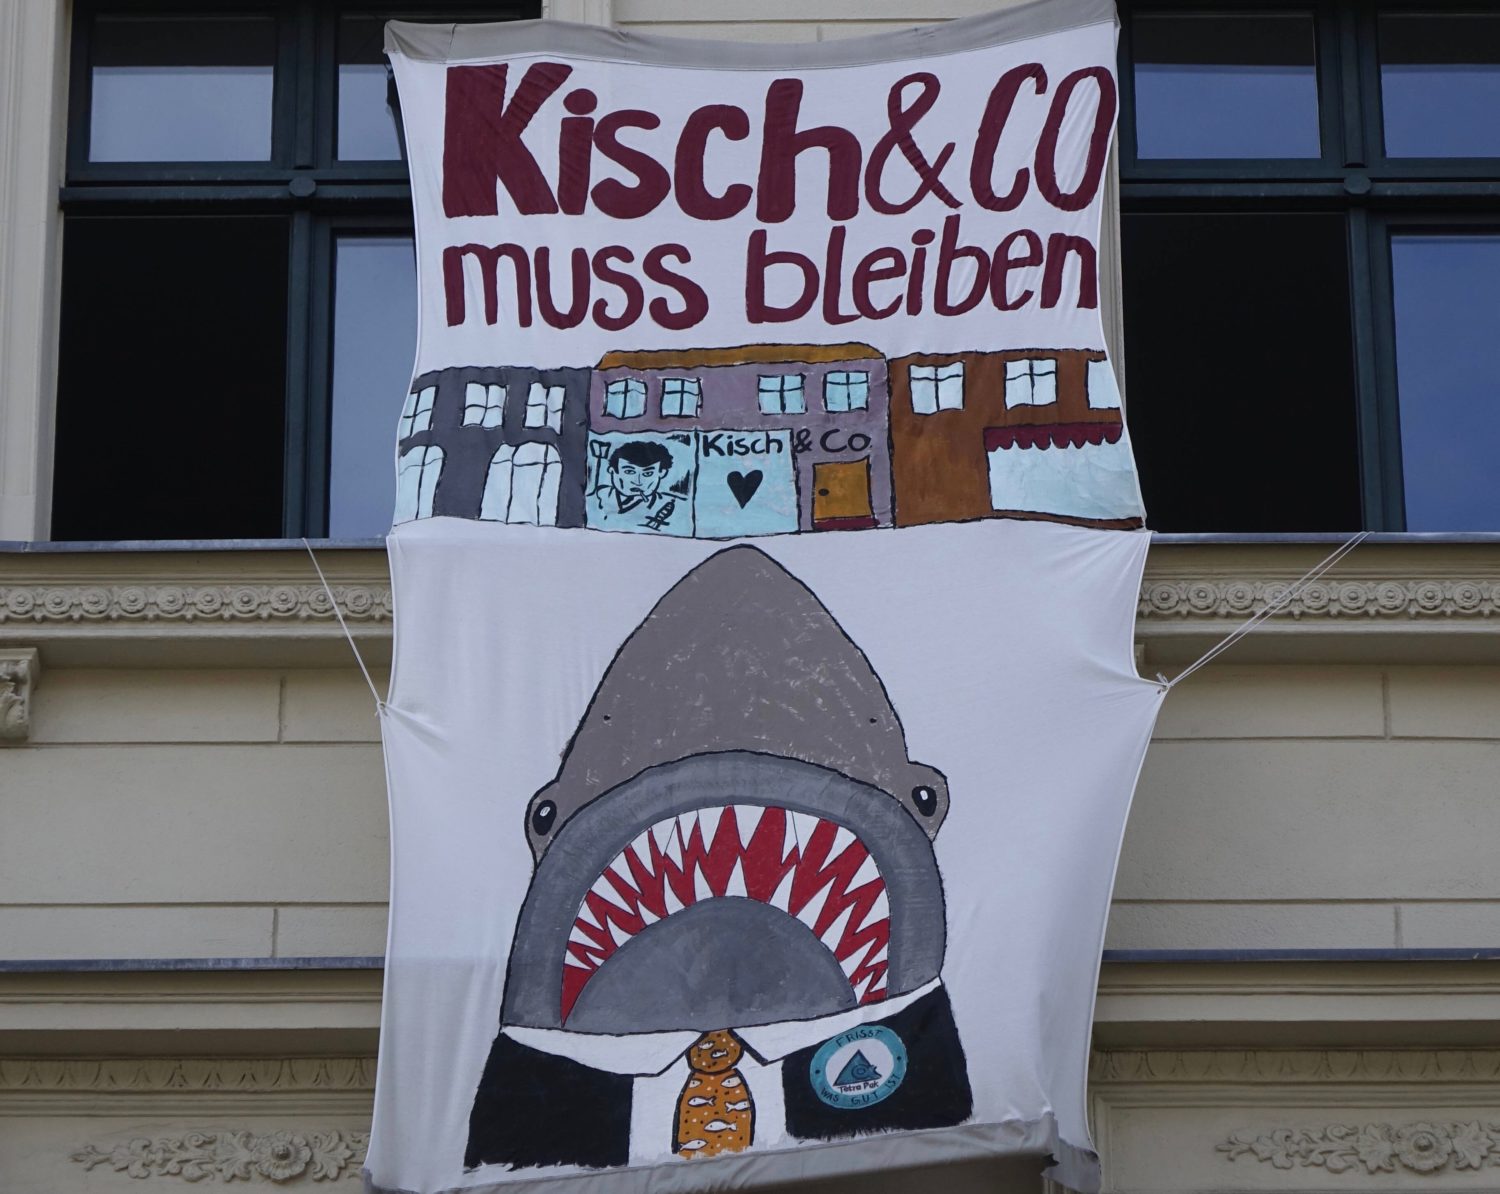 Kisch & Co. muss bleiben: Dieses Transparent war im Sommer 2020 in Kreuzberg zu sehen. Foto: Imago Images/Steinach